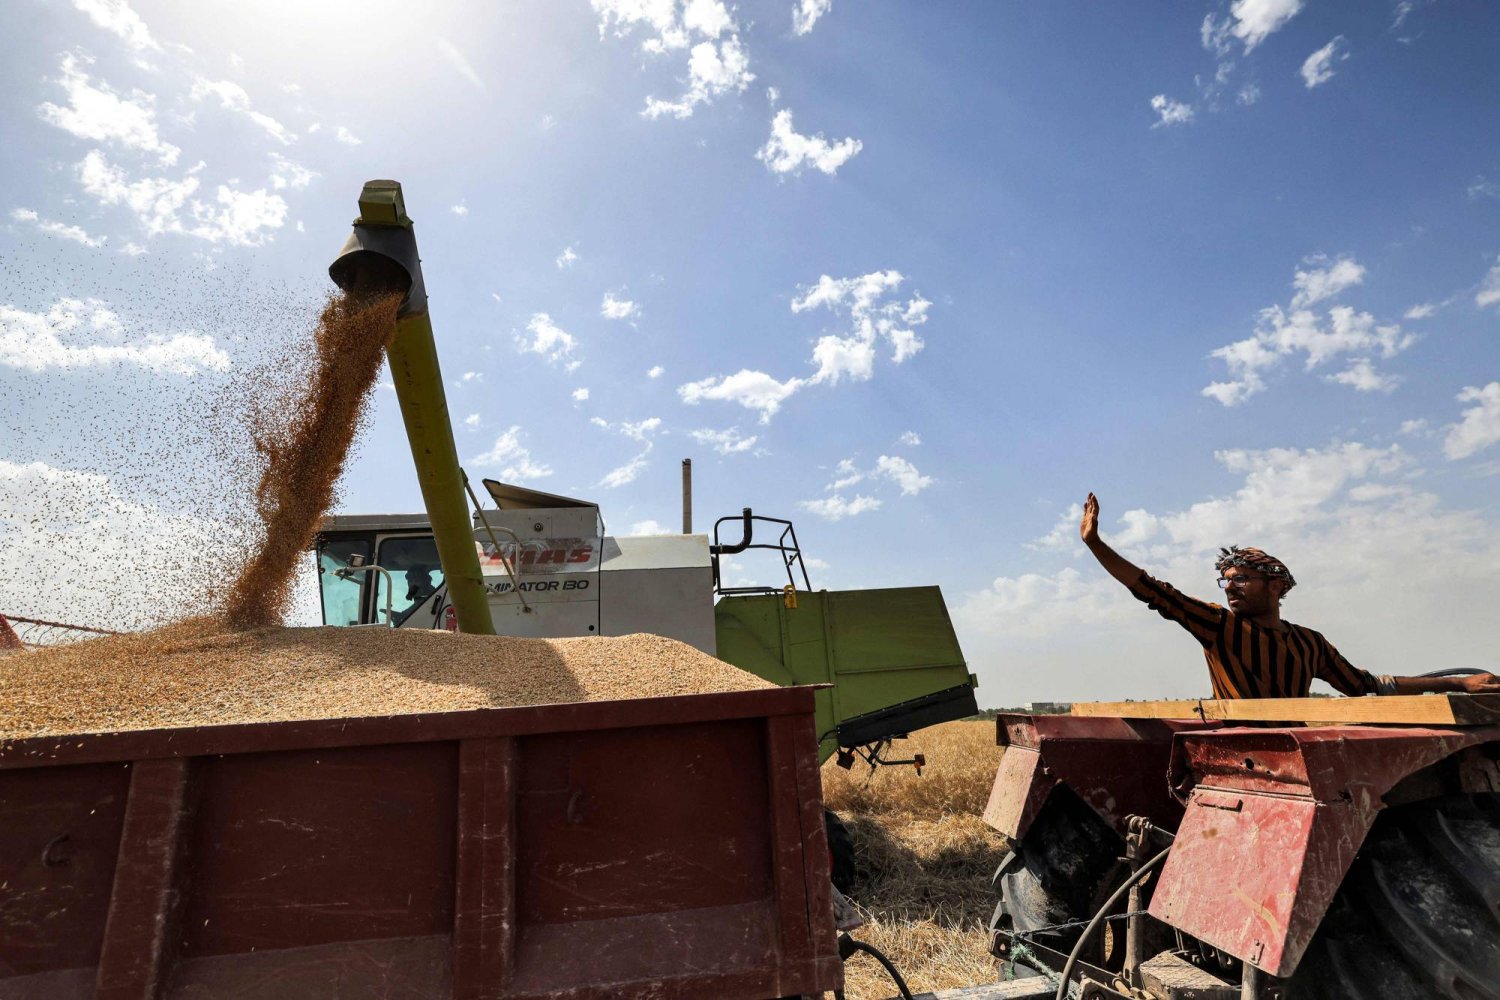 عمال خلال حصاد القمح بأحد الحقول في محافظة النجف العراقية (أ.ف.ب)